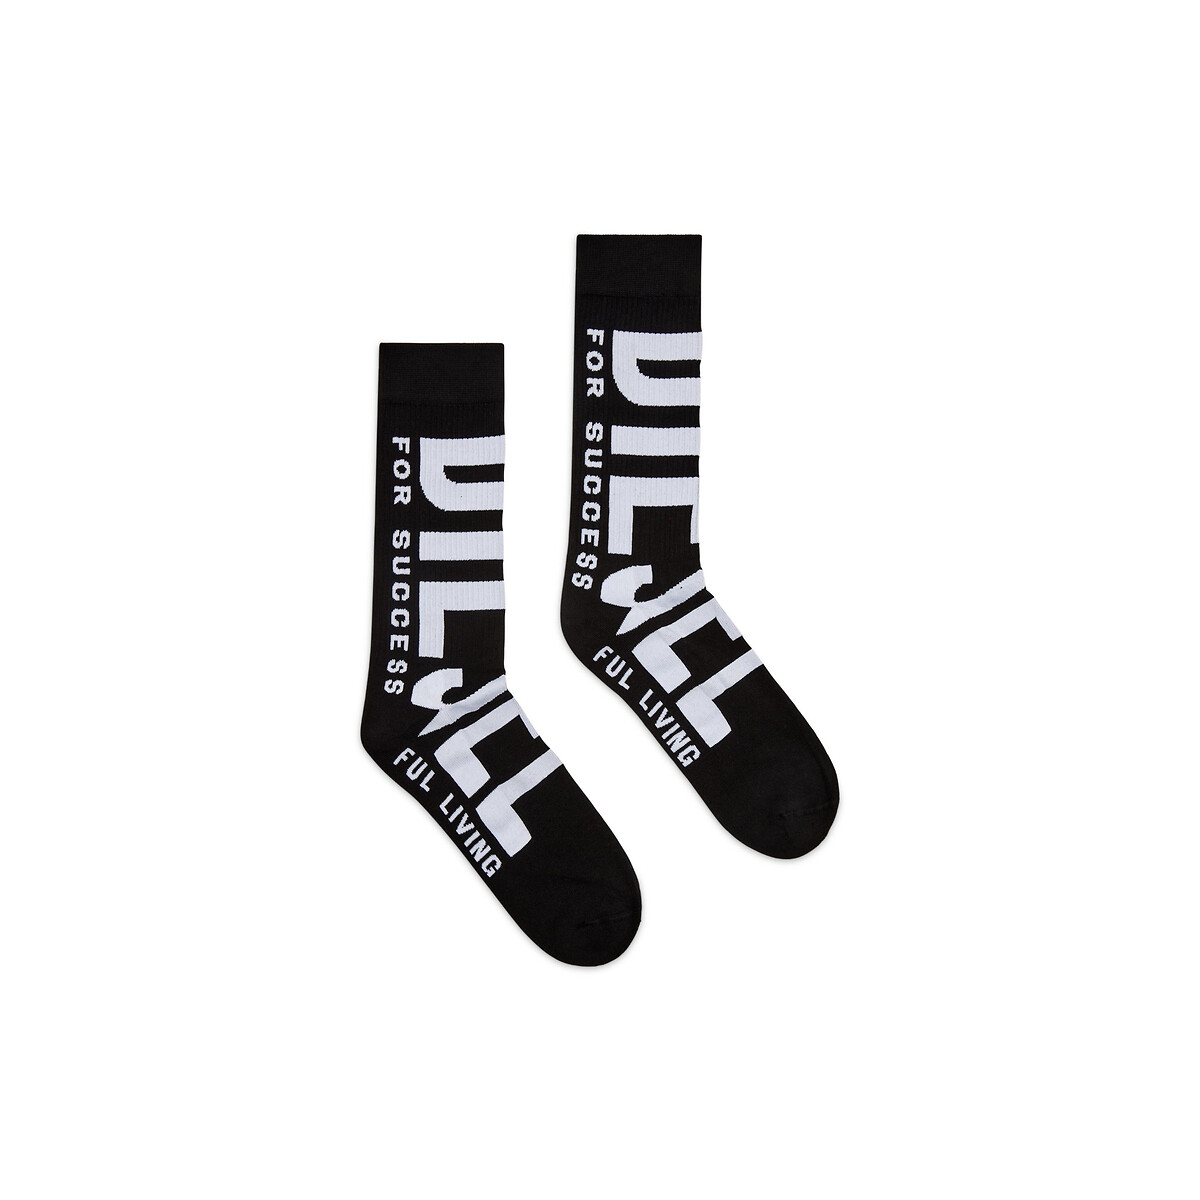 Socken mit XL-Logo von Diesel